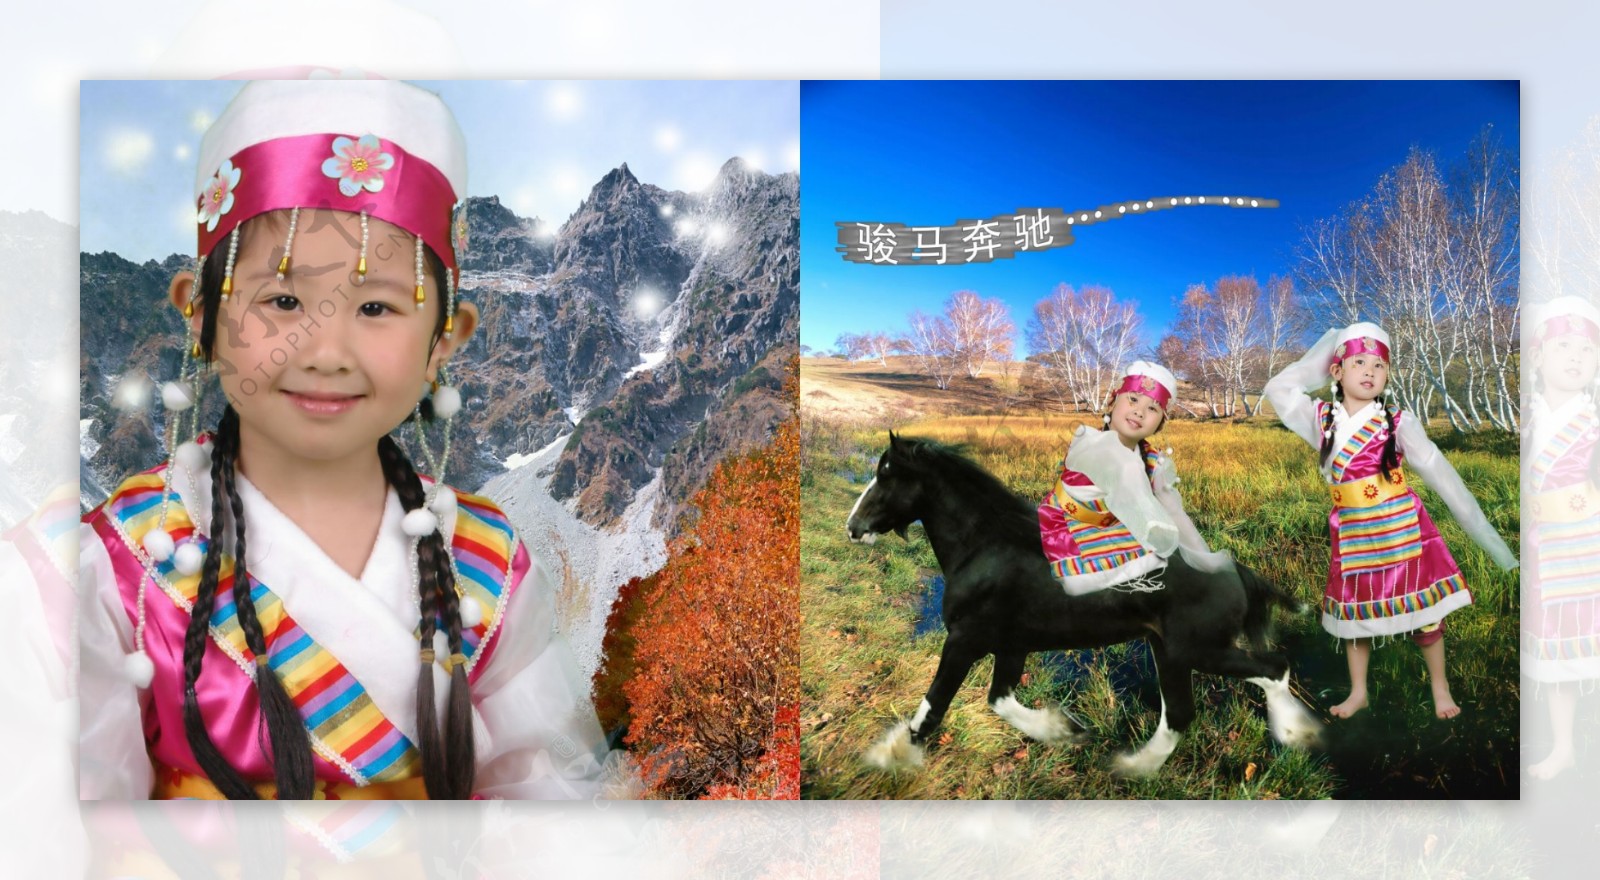 儿童模板儿童摄影模板儿童照片模板儿童相册模板西藏风情宝贝超级可爱psd分层素材源文件女孩少数名族